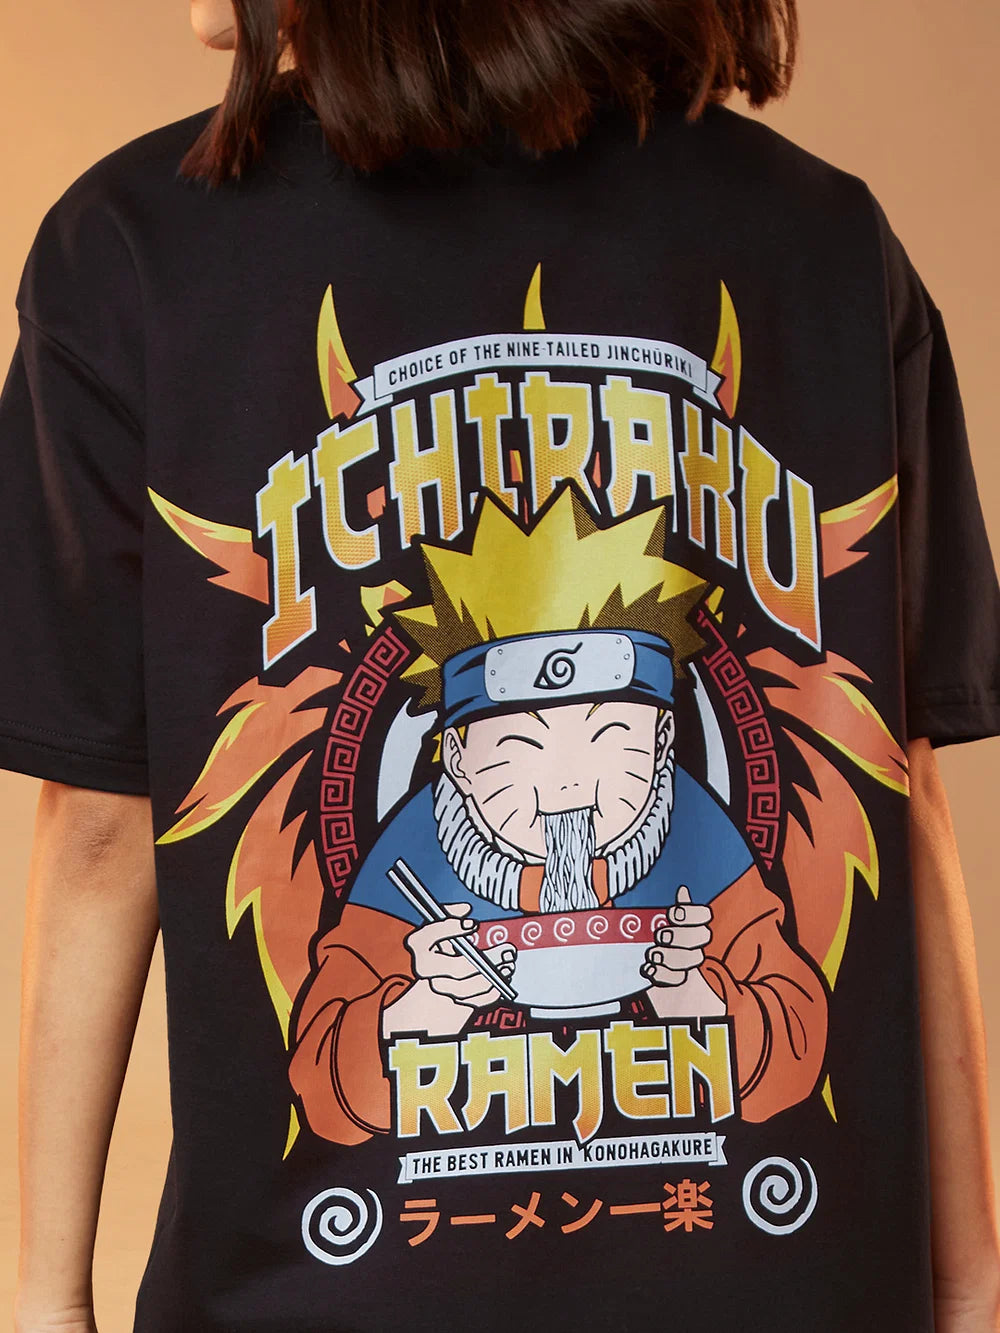 Naruto Ichiraku Ramen (UK version)